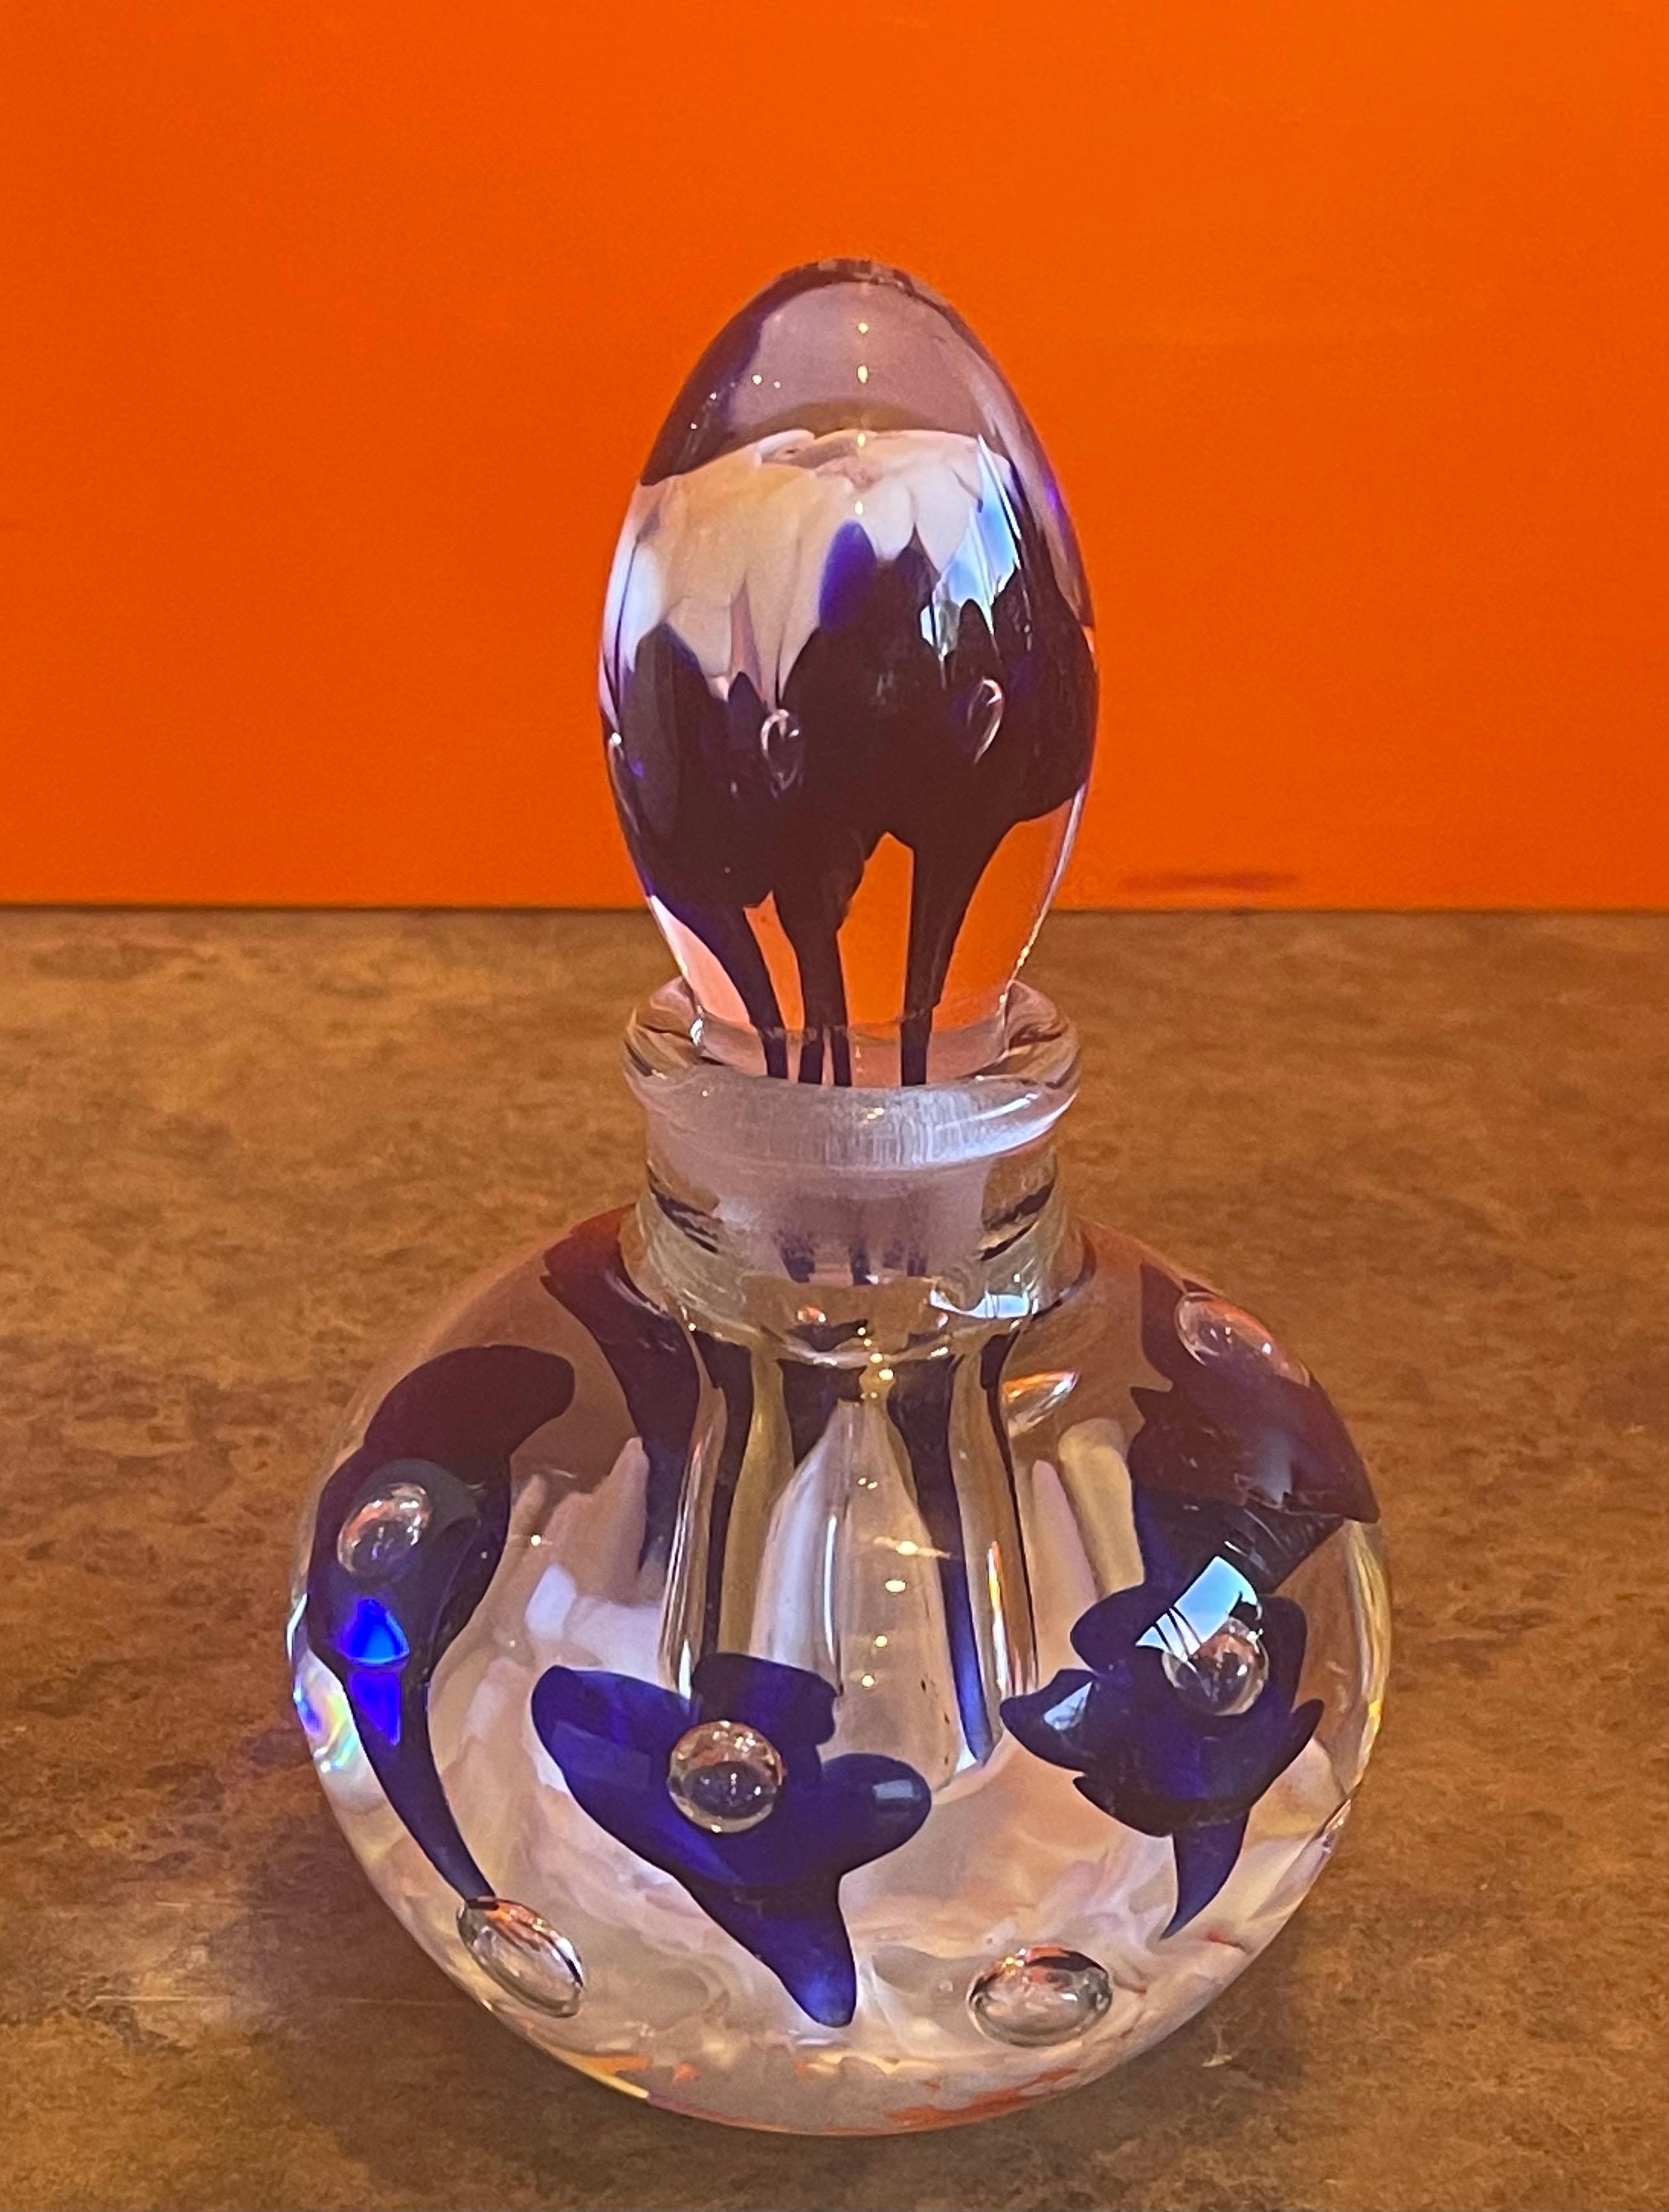 Schöner Kunstglas-Parfümflakon von Joe Rice, ca. 1990er Jahre. Die Flasche ist aus klarem Glas mit weißen Blütenblättern am Boden und leuchtend blauen Blumen, die im Glas schwimmen. Das Stück ist in sehr gutem Zustand ohne Risse oder Chips und misst